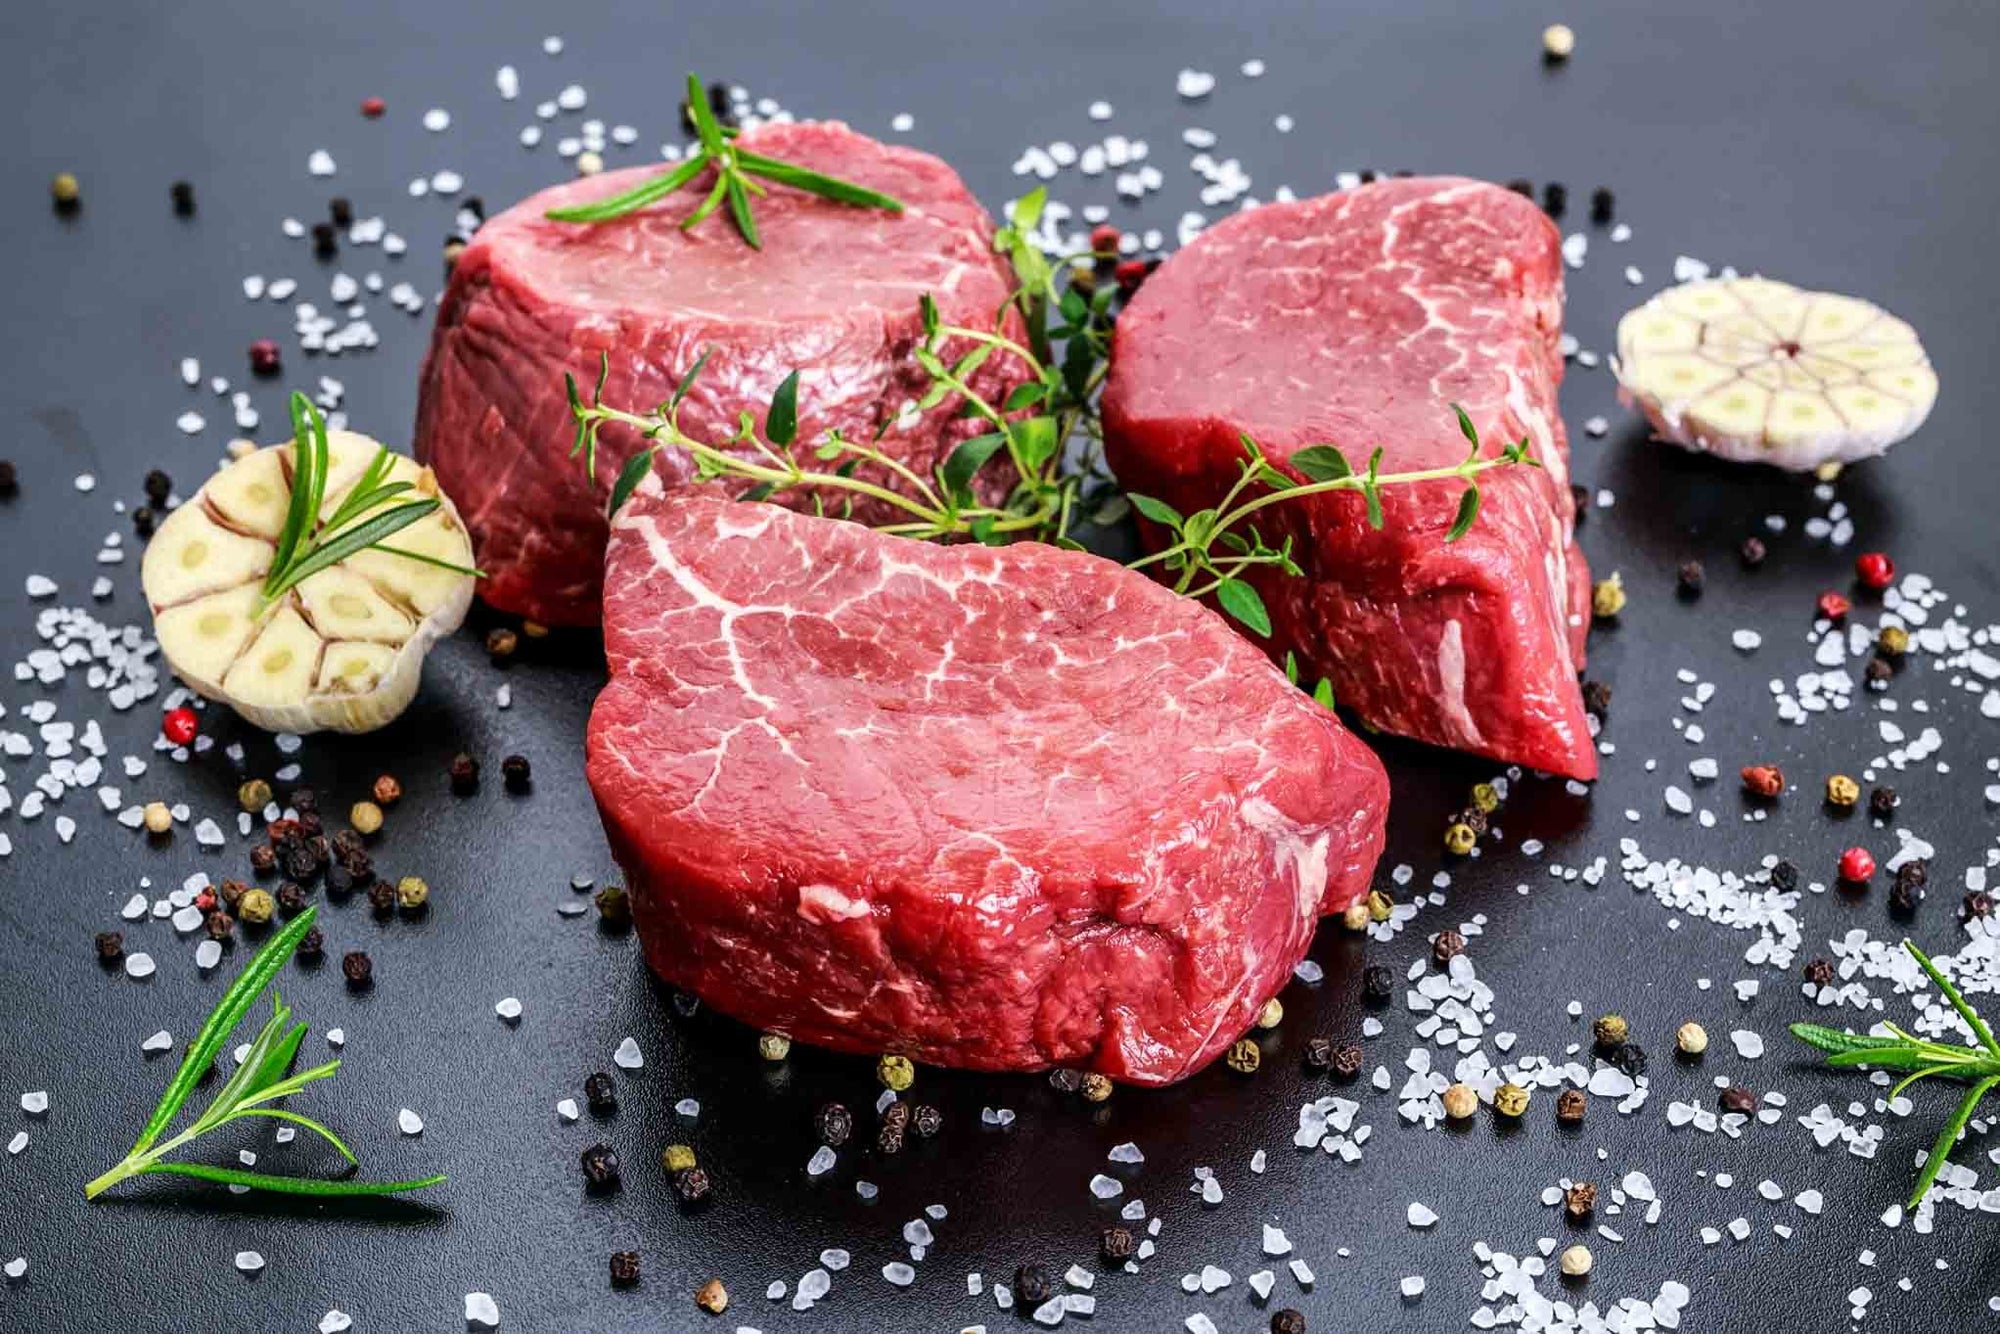 100% Grass Fed Finished Beef Raised on Pasture Filet Mignon Humane Harvest Steak Tender Northstar Bison